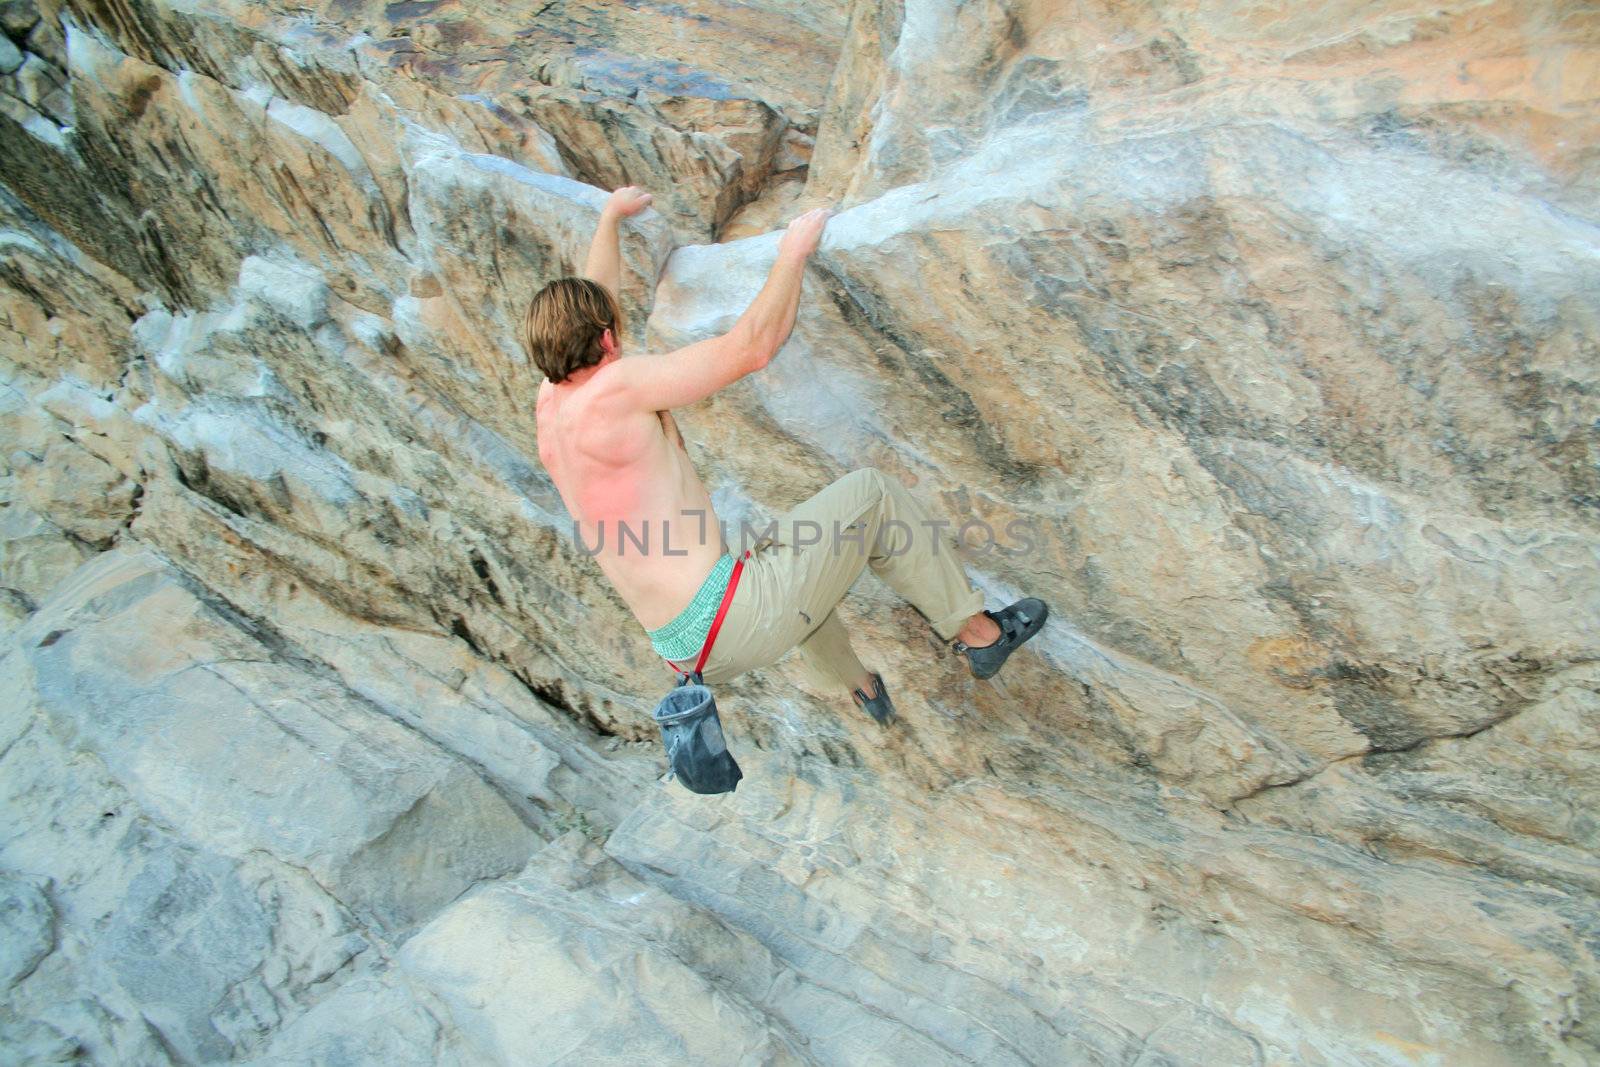 rock climber by evok20